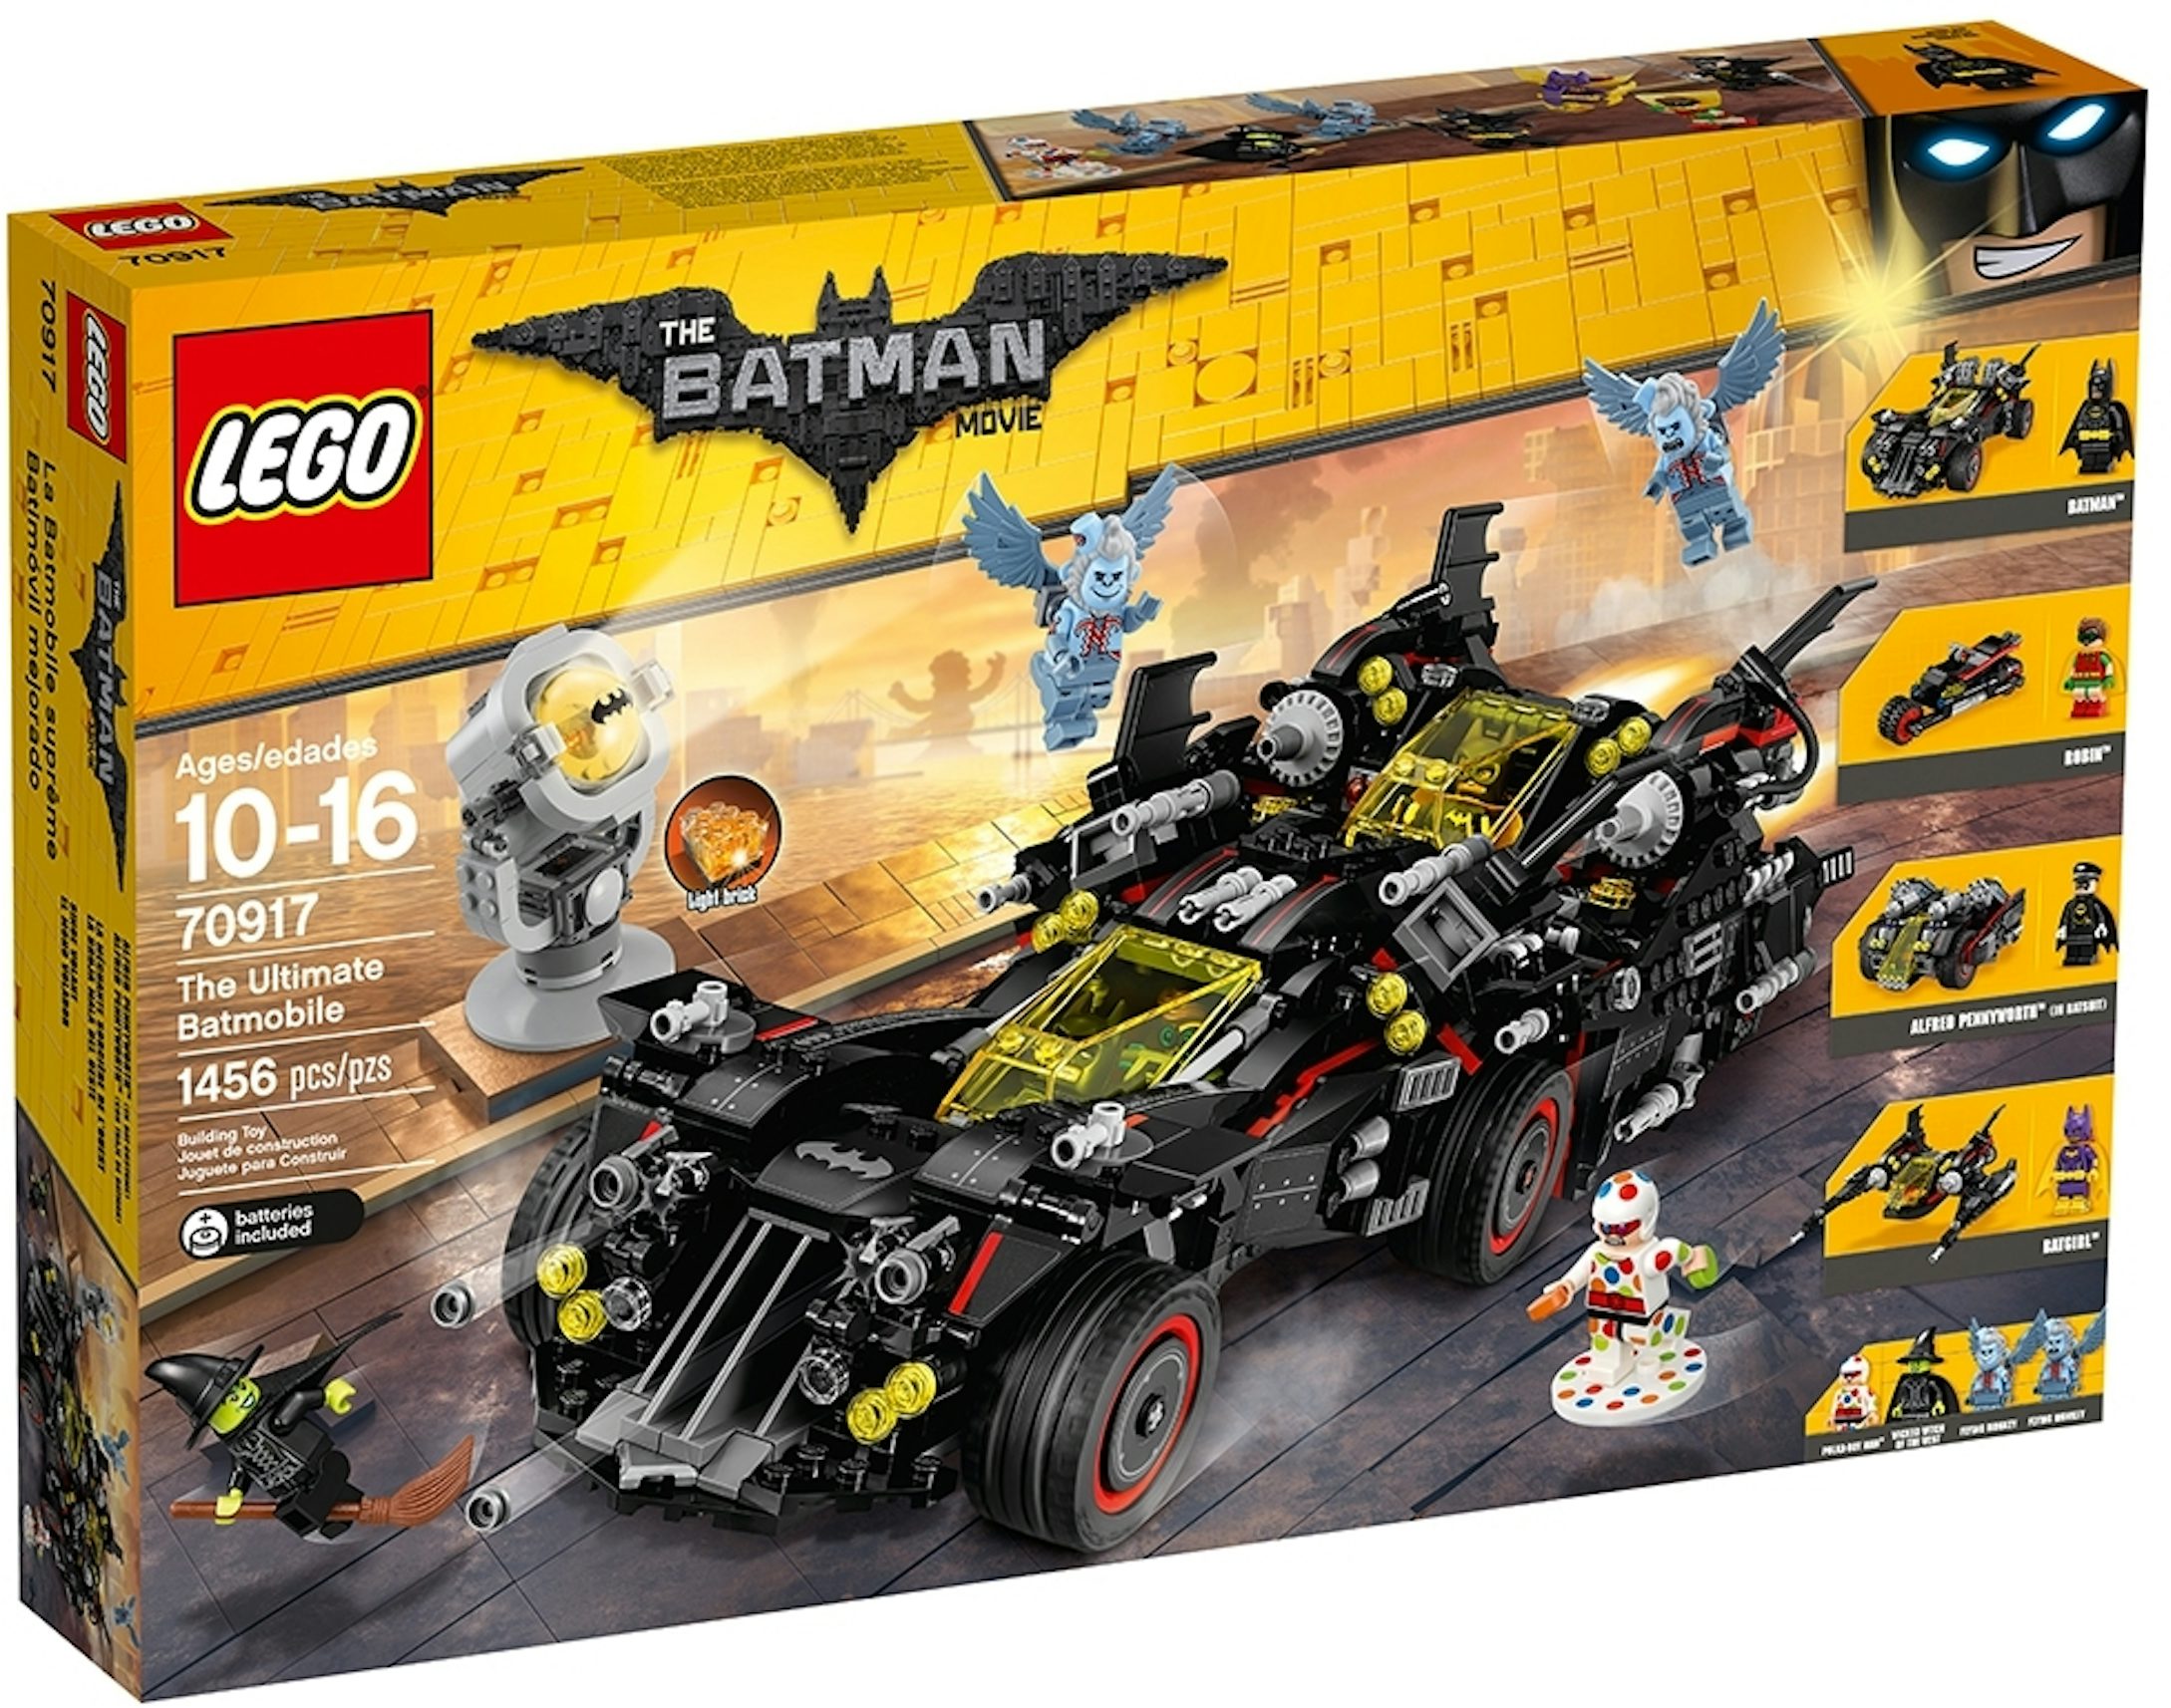 batman lego sets